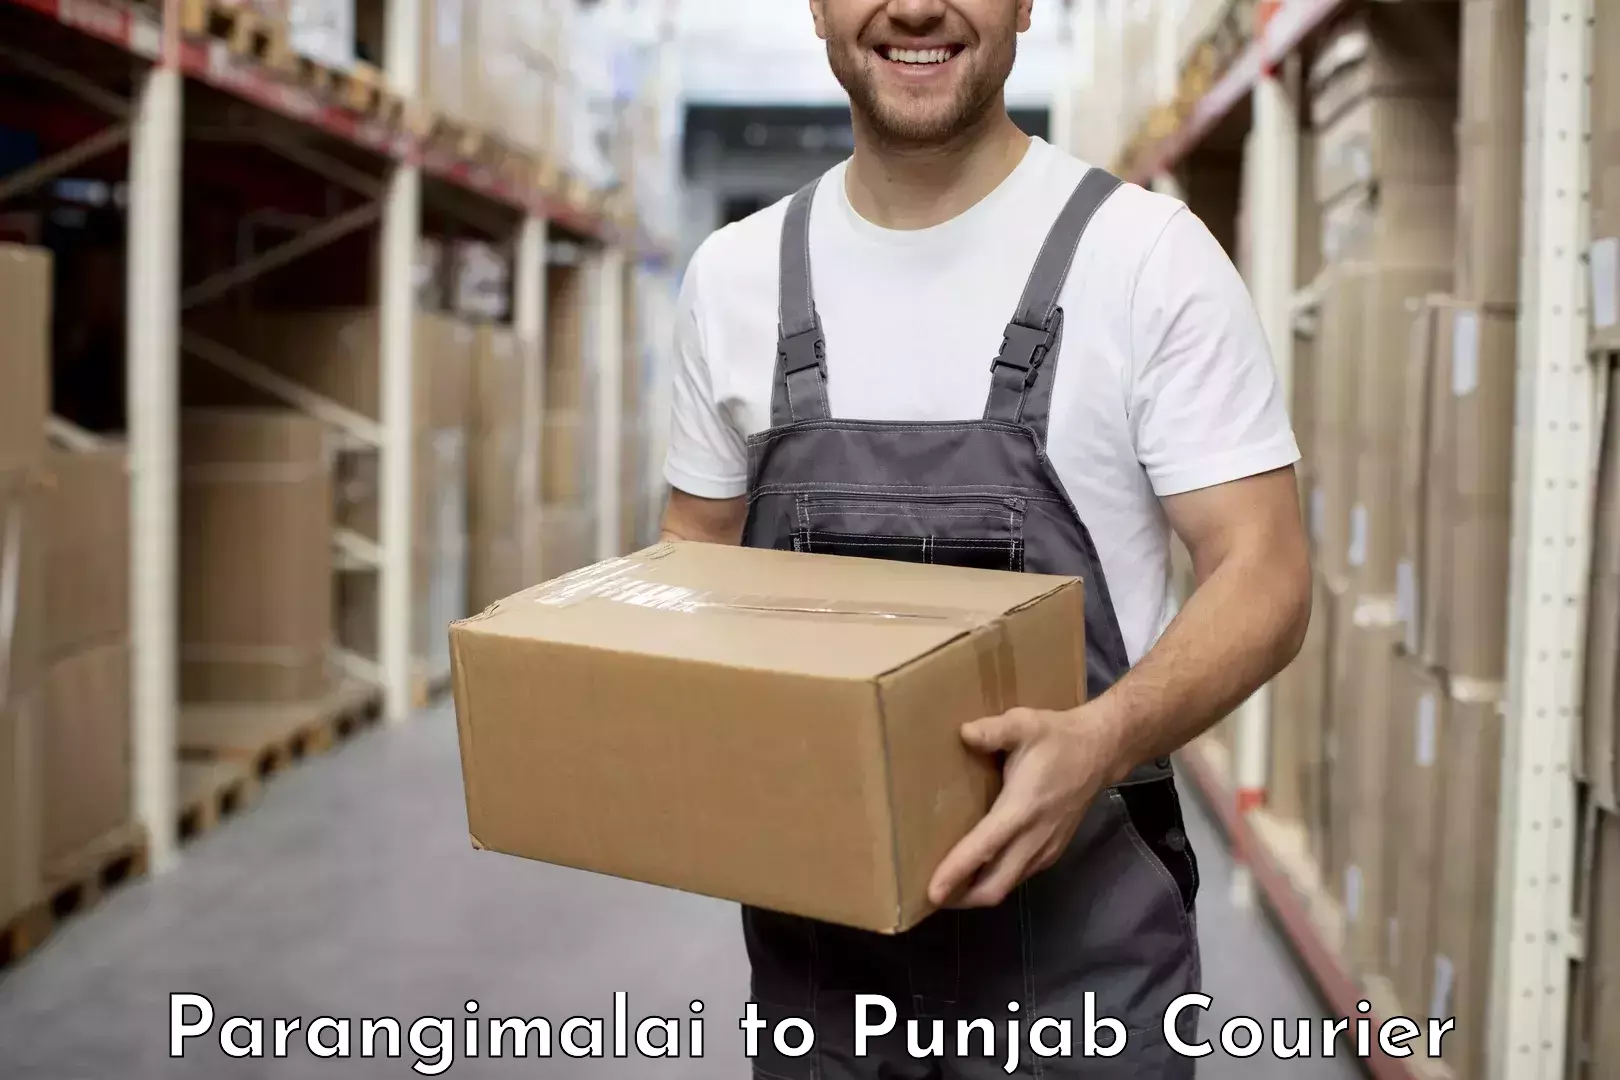 Courier membership Parangimalai to Punjab